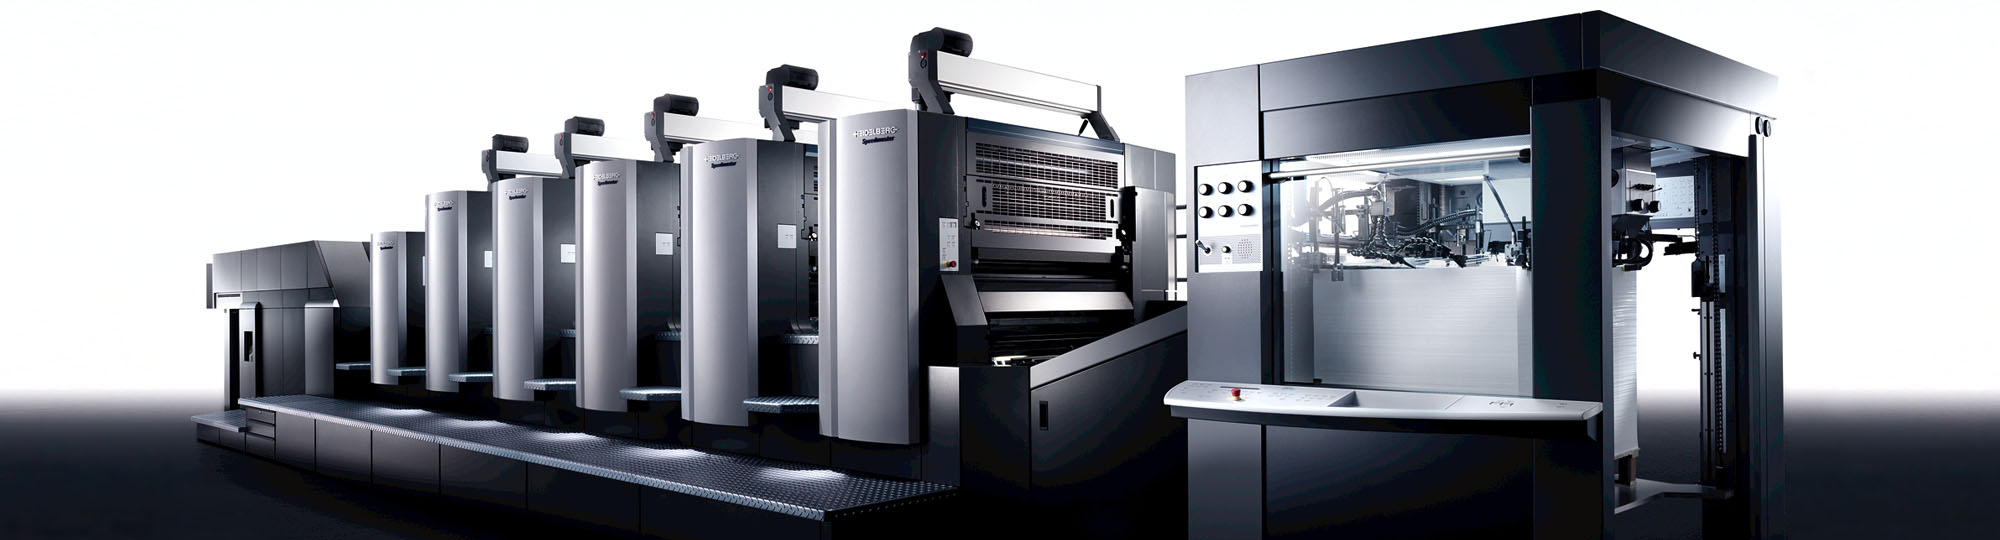  Printing Machines